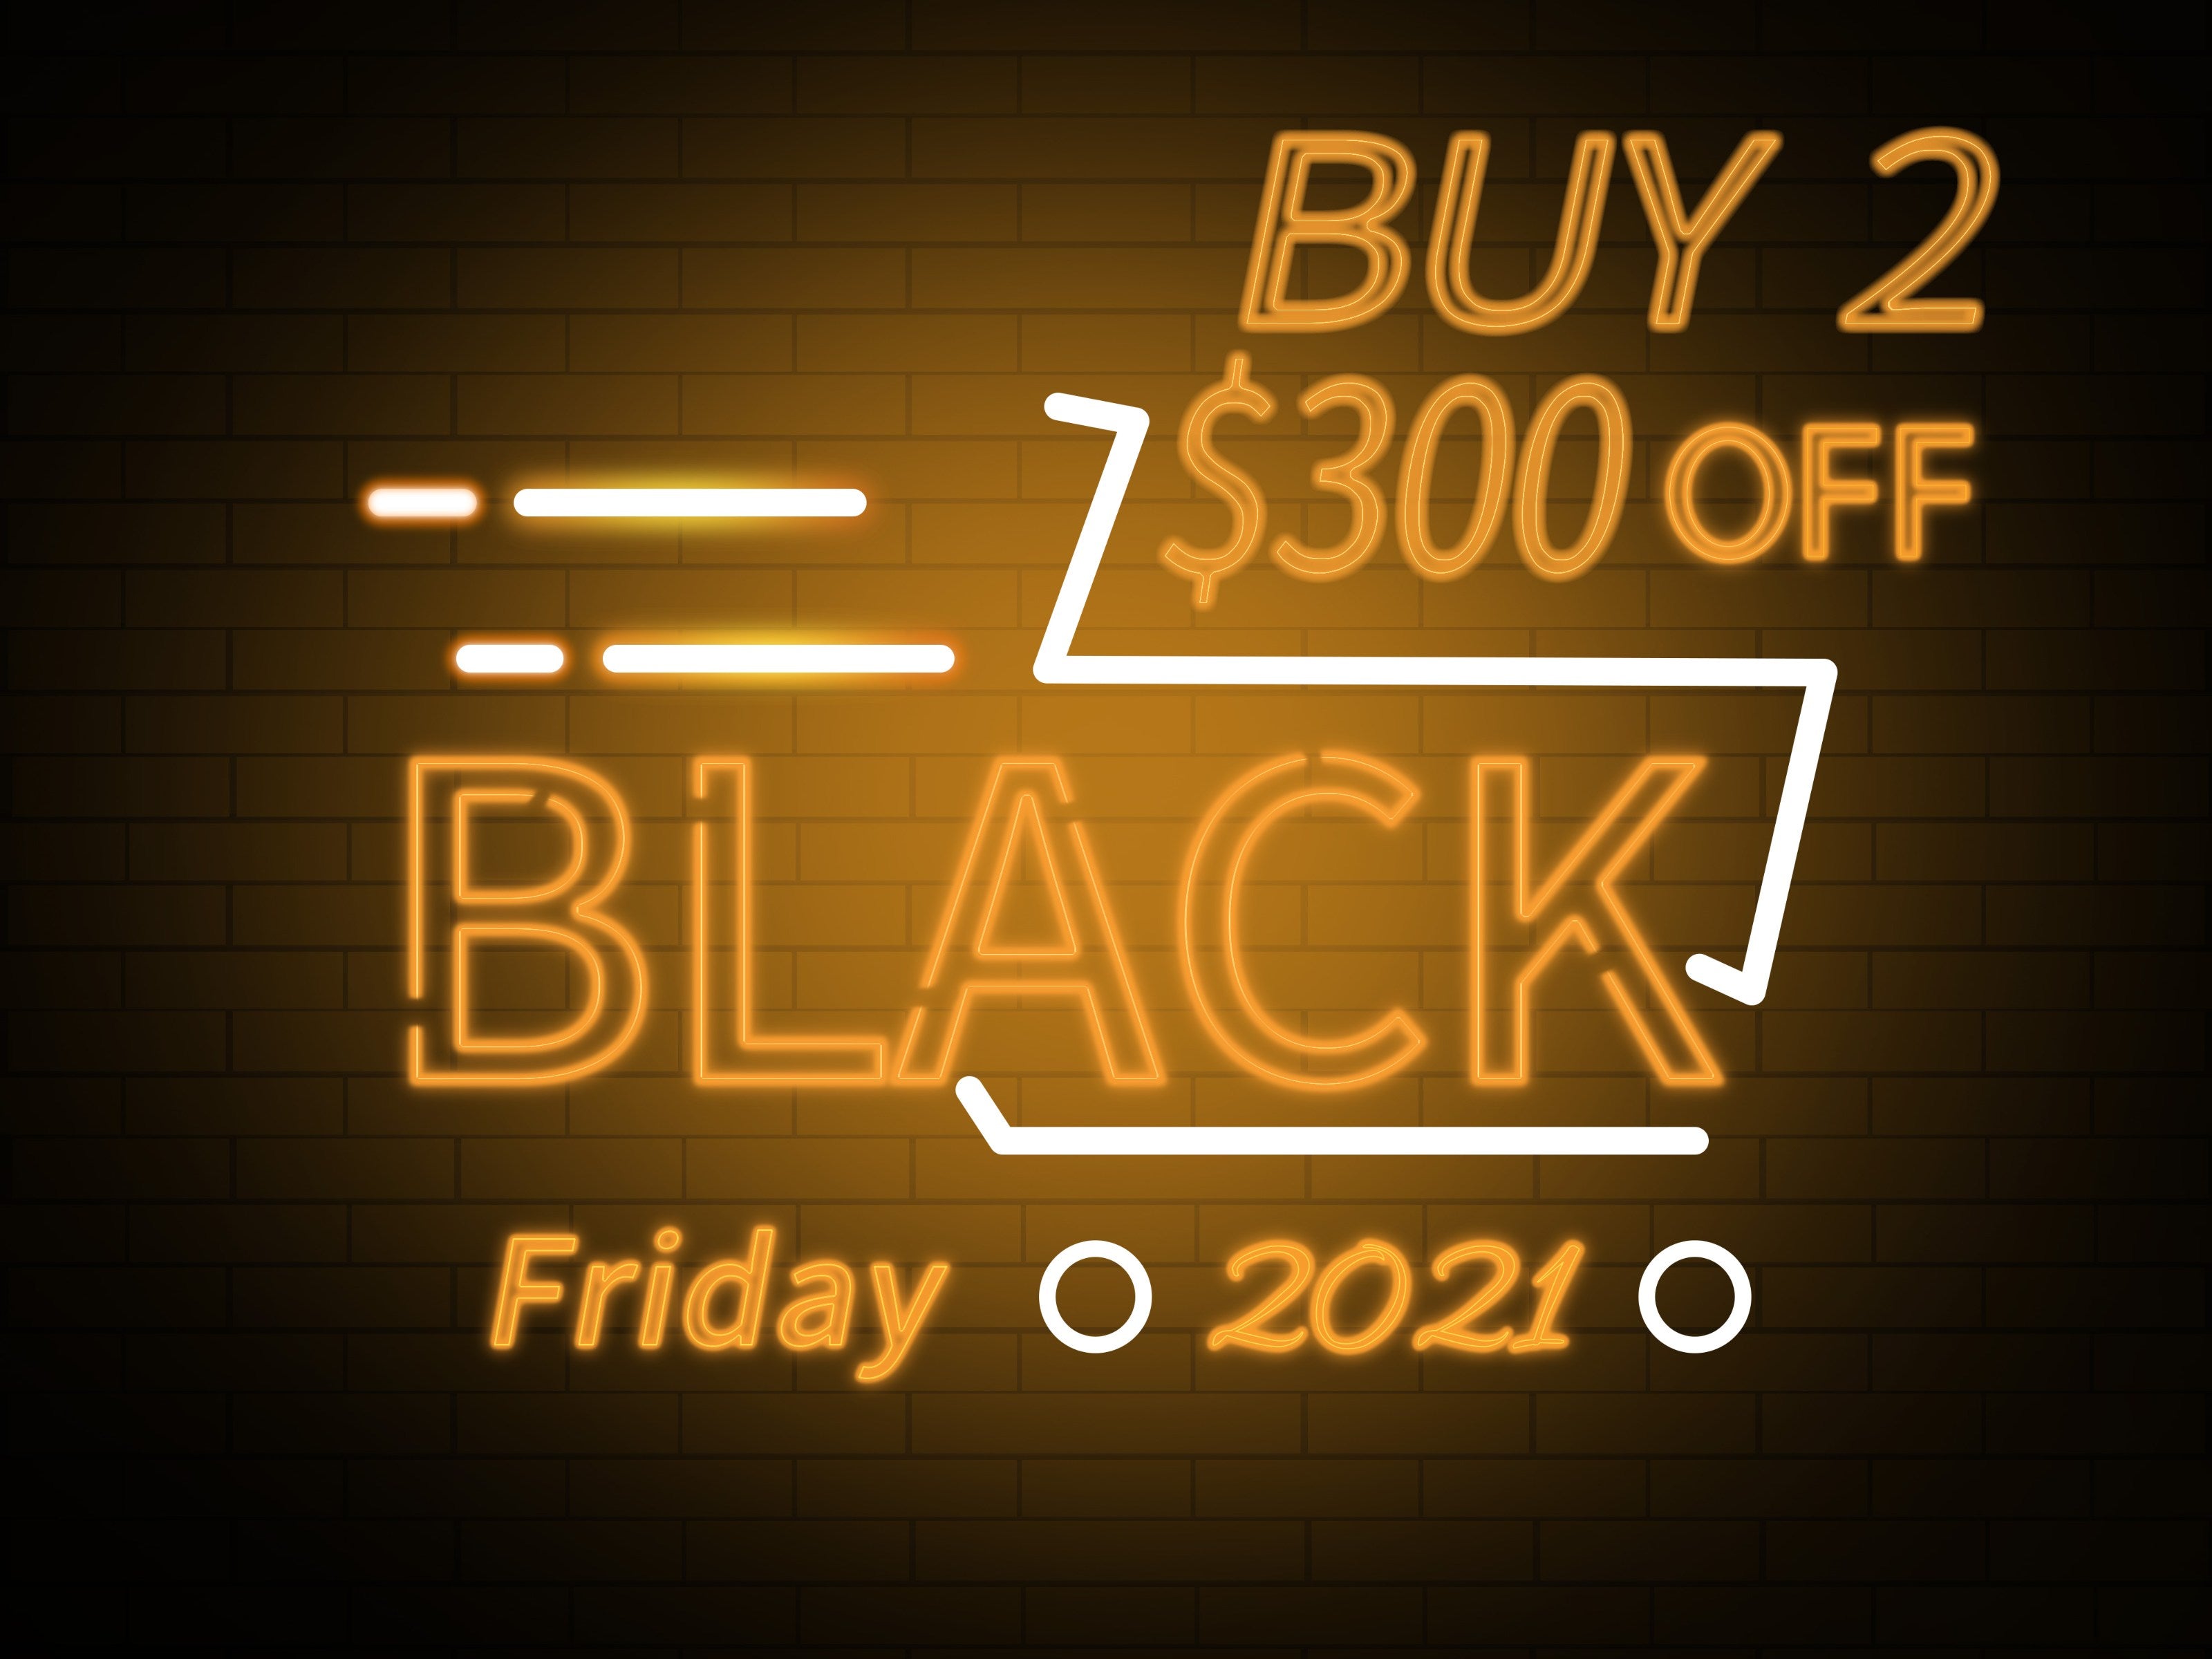 KBO Electric bike black friday sale 2021